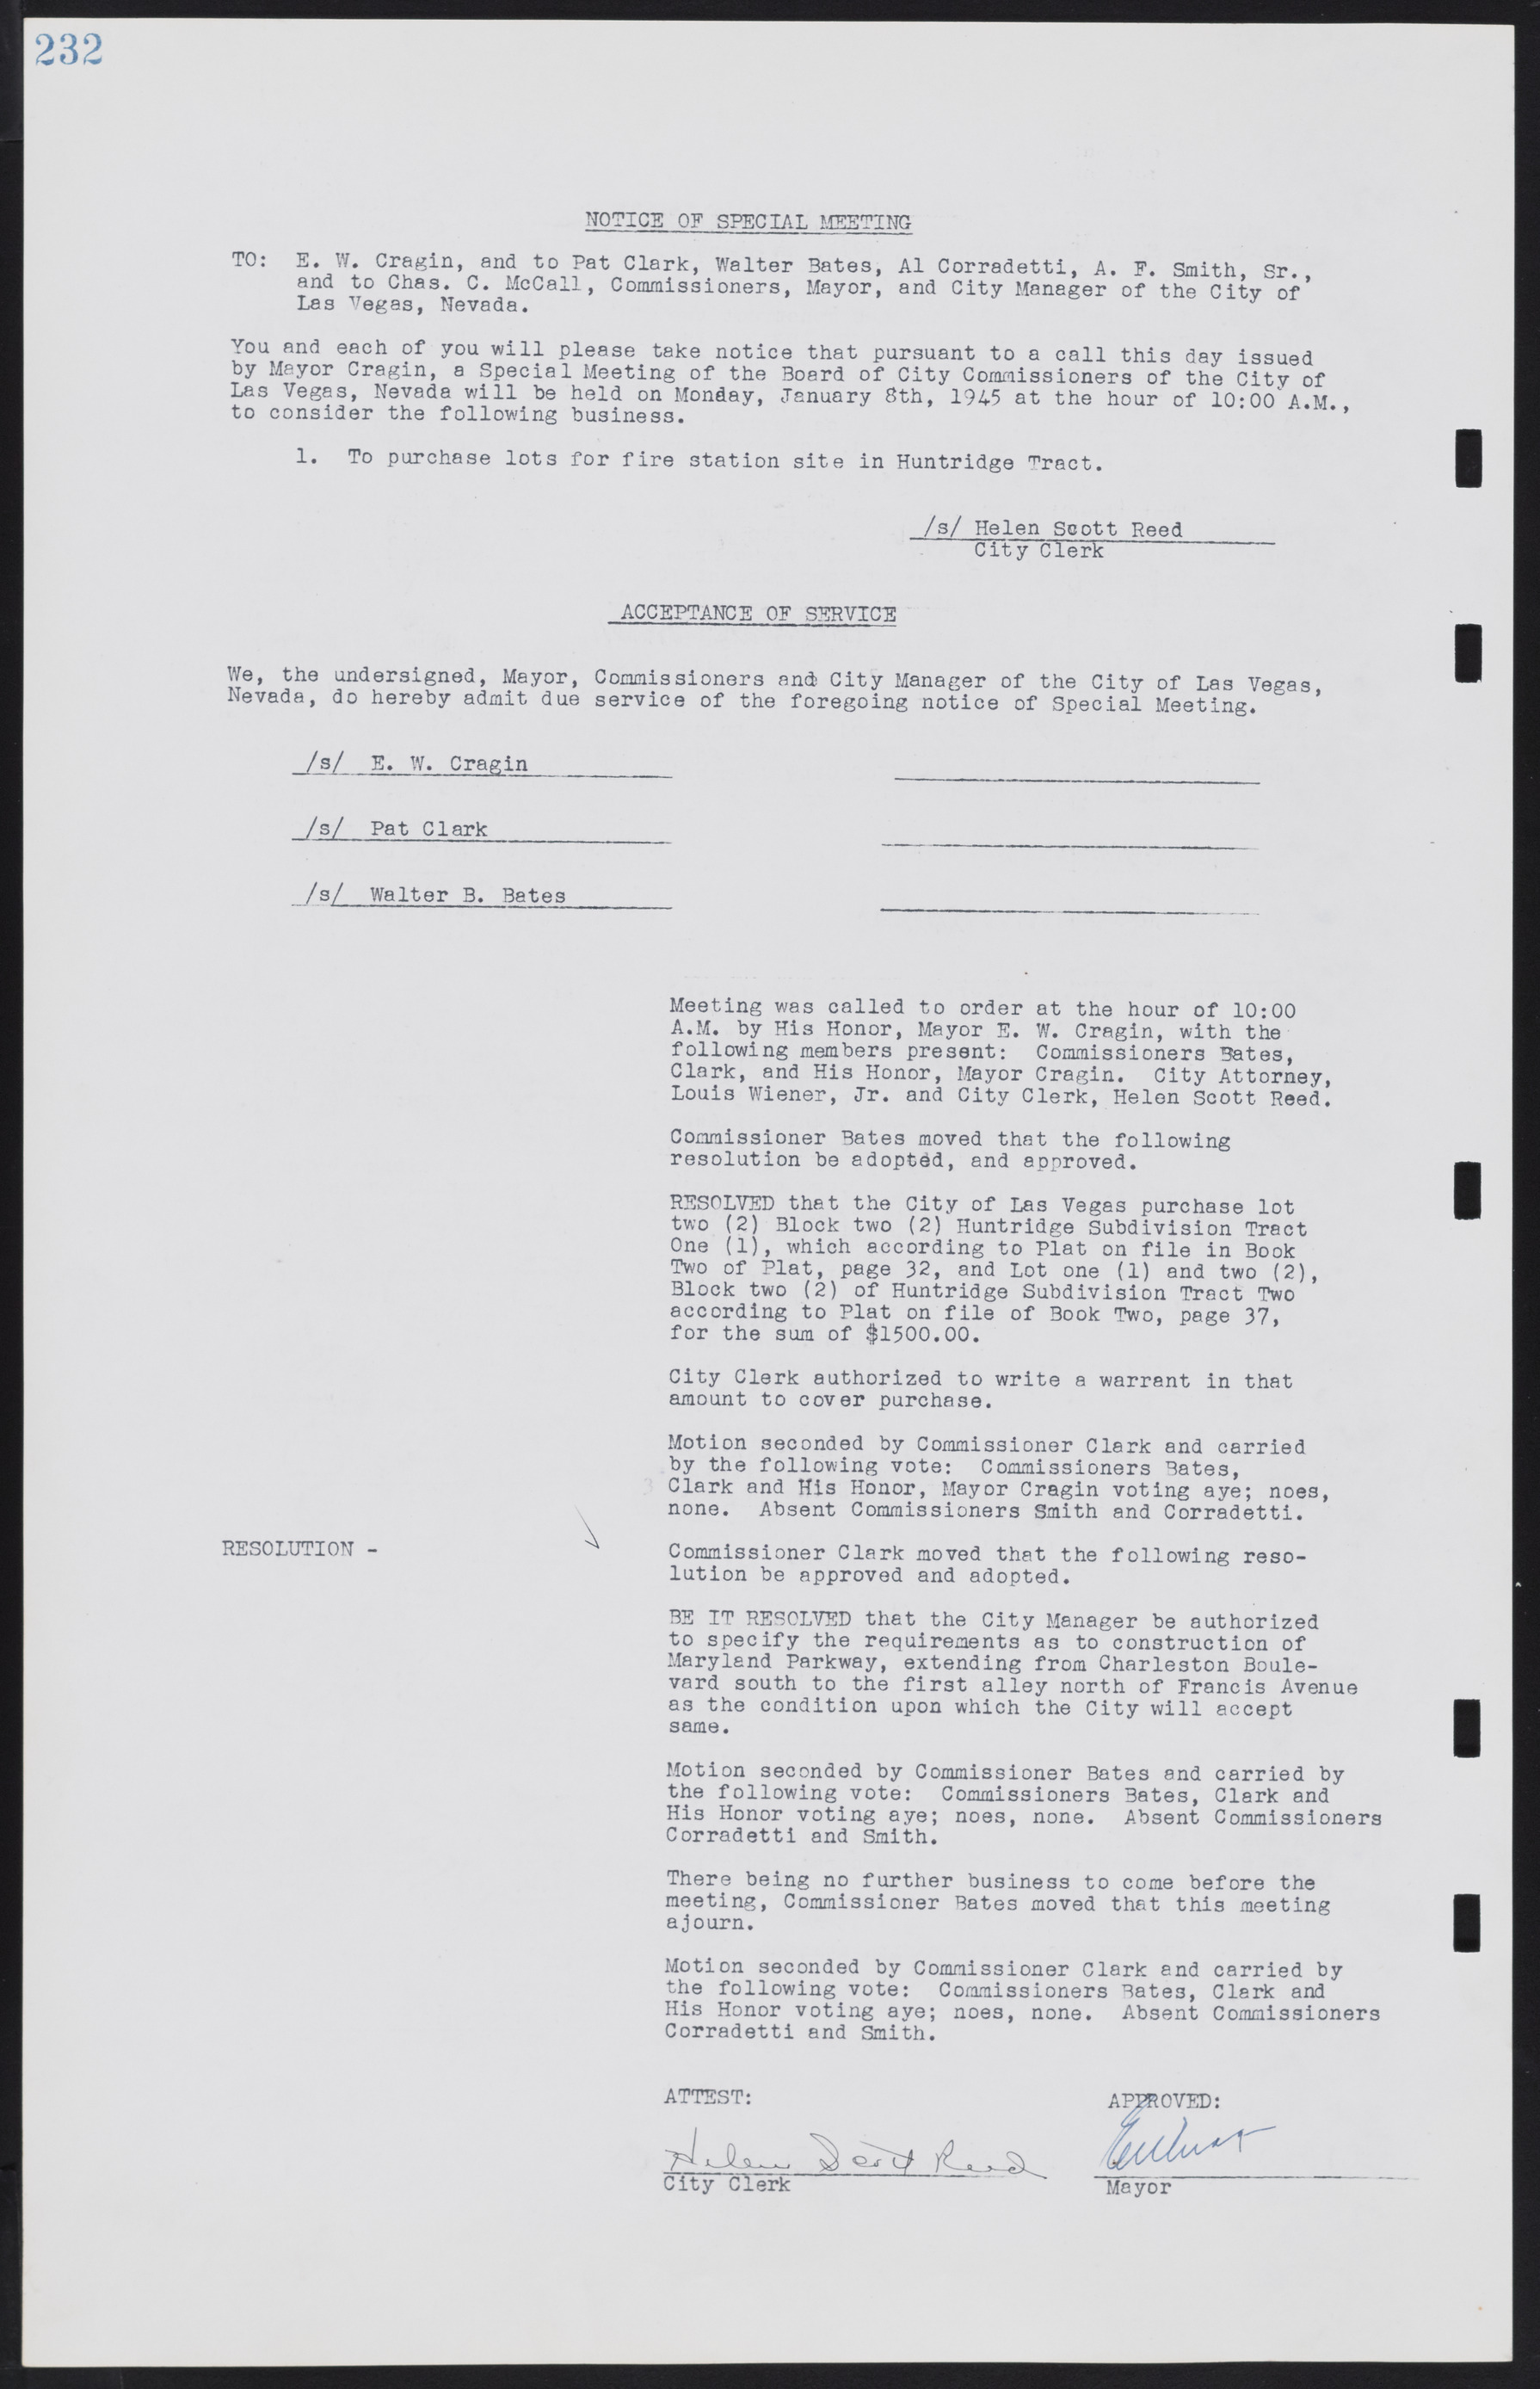 Las Vegas City Commission Minutes, August 11, 1942 to December 30, 1946, lvc000005-254